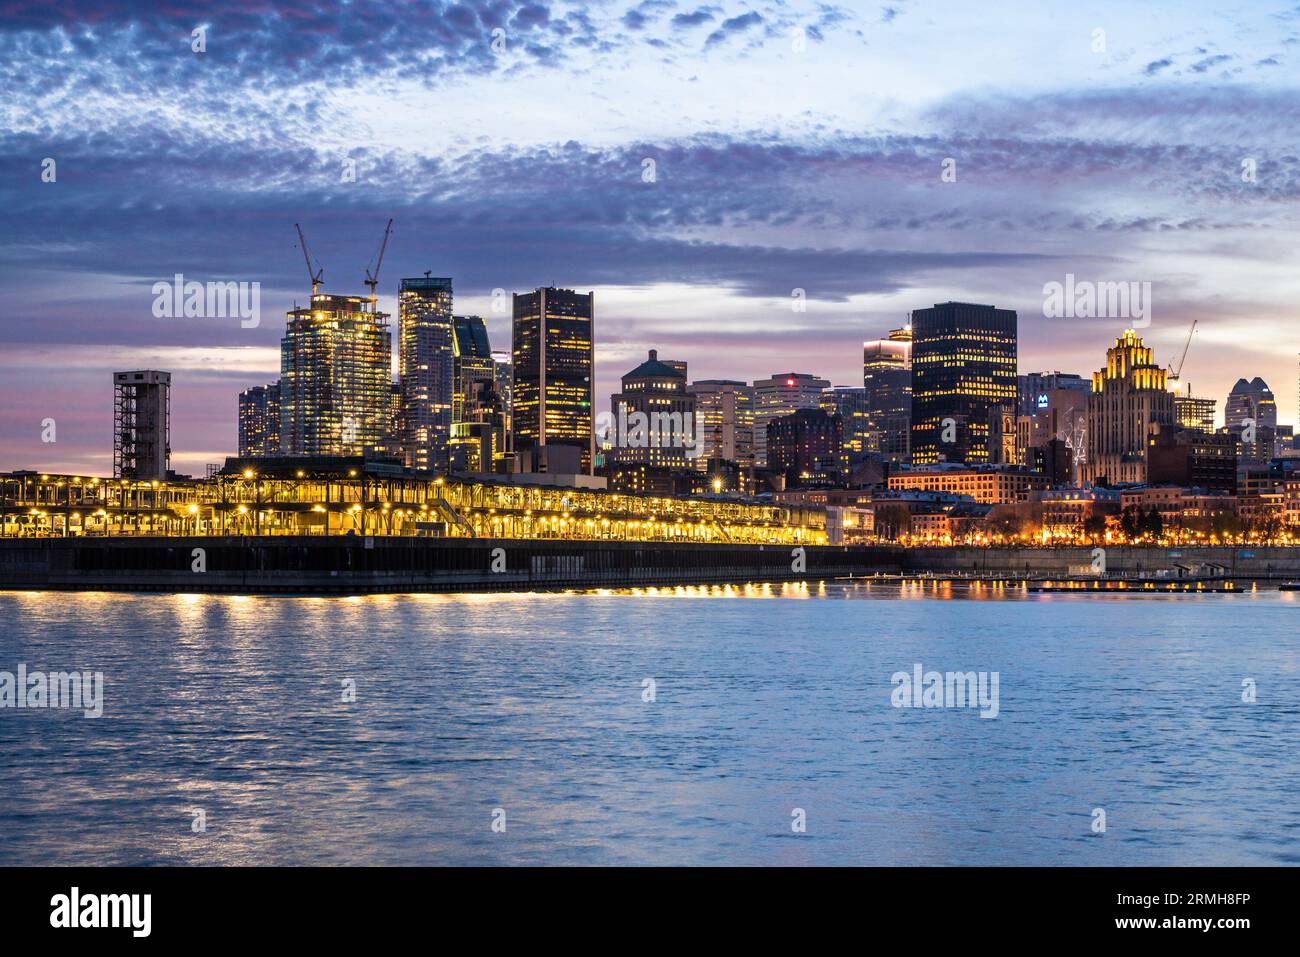 Ville de Montréal Canada Skyline au coucher du soleil avec bâtiments et rivière en vue. Banque D'Images